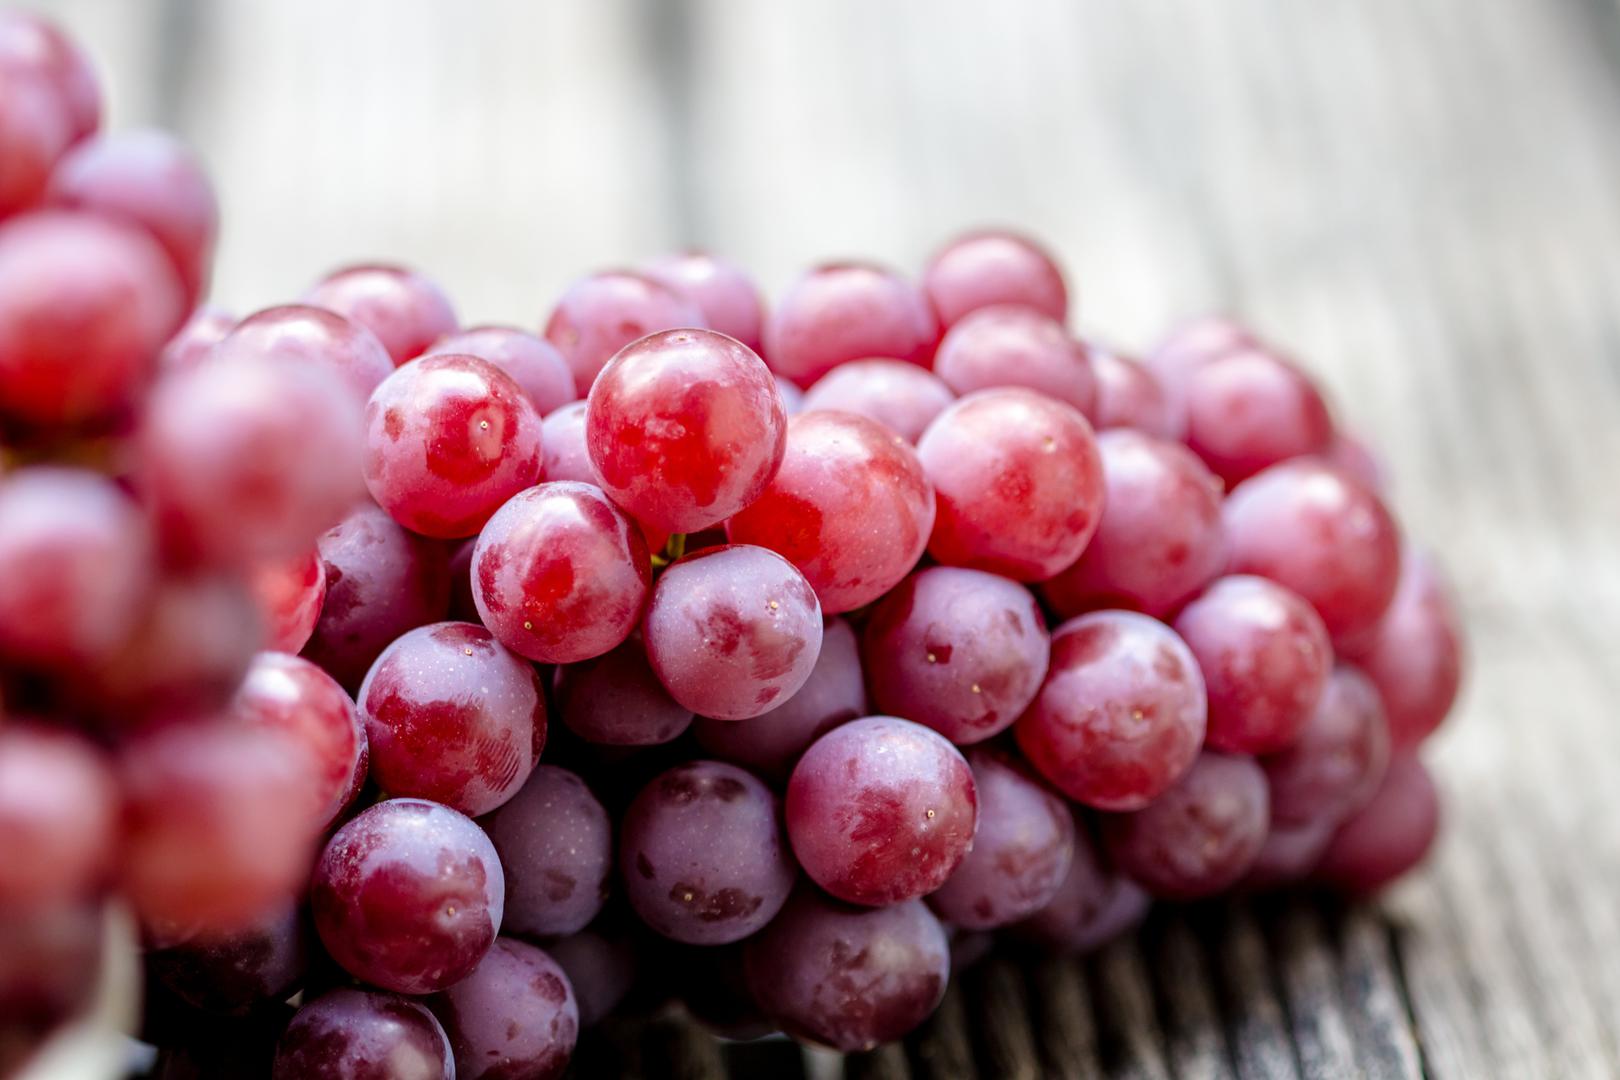 Crveno grožđe – Resveratrol, tvar koja se nalazi u crnom vinu, a grožđe štiti od plijesni, jedan je od najčešćih spojeva koji se koriste u borbi protiv raka. Koža crvenog grožđa prepuna je resveratrola koji sprječava nastajanje stanica raka.